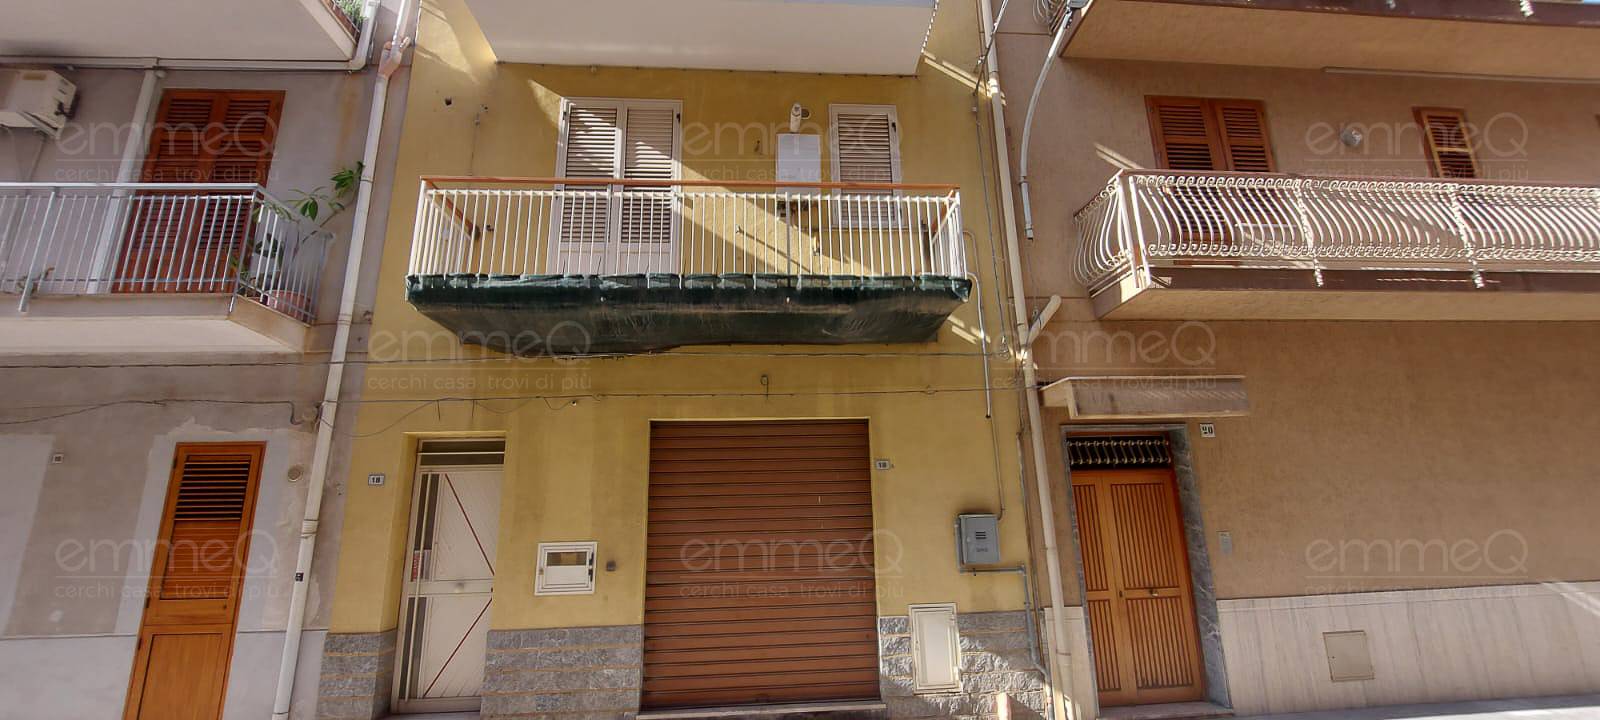 Appartamento in vendita a Casteldaccia, 2 locali, zona uzza, prezzo € 72.000 | PortaleAgenzieImmobiliari.it